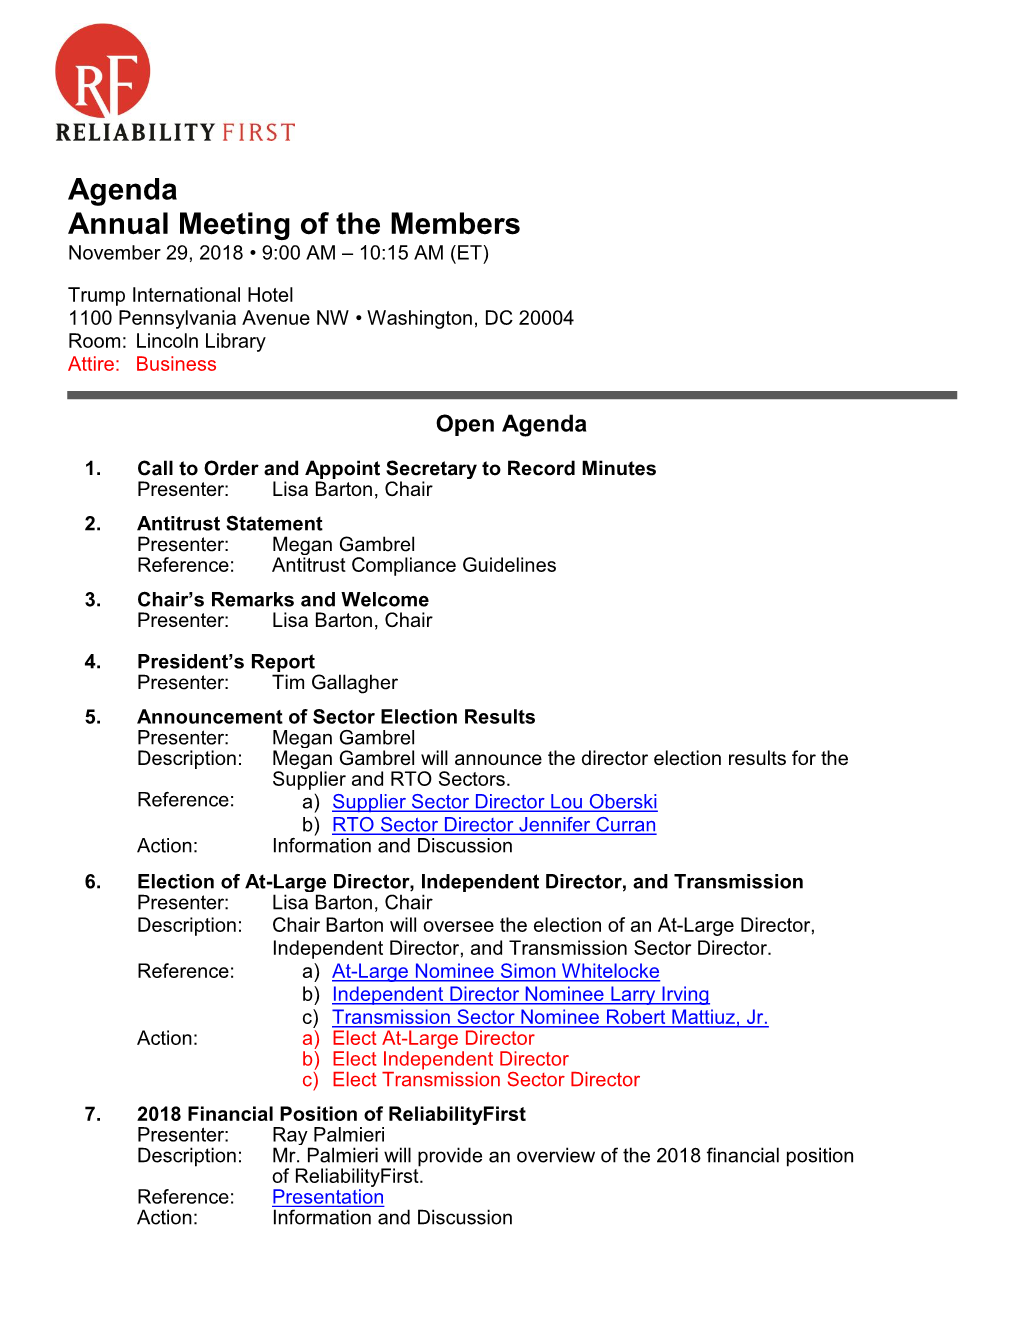 2018-11-29 Annual Meeting of Members Agenda